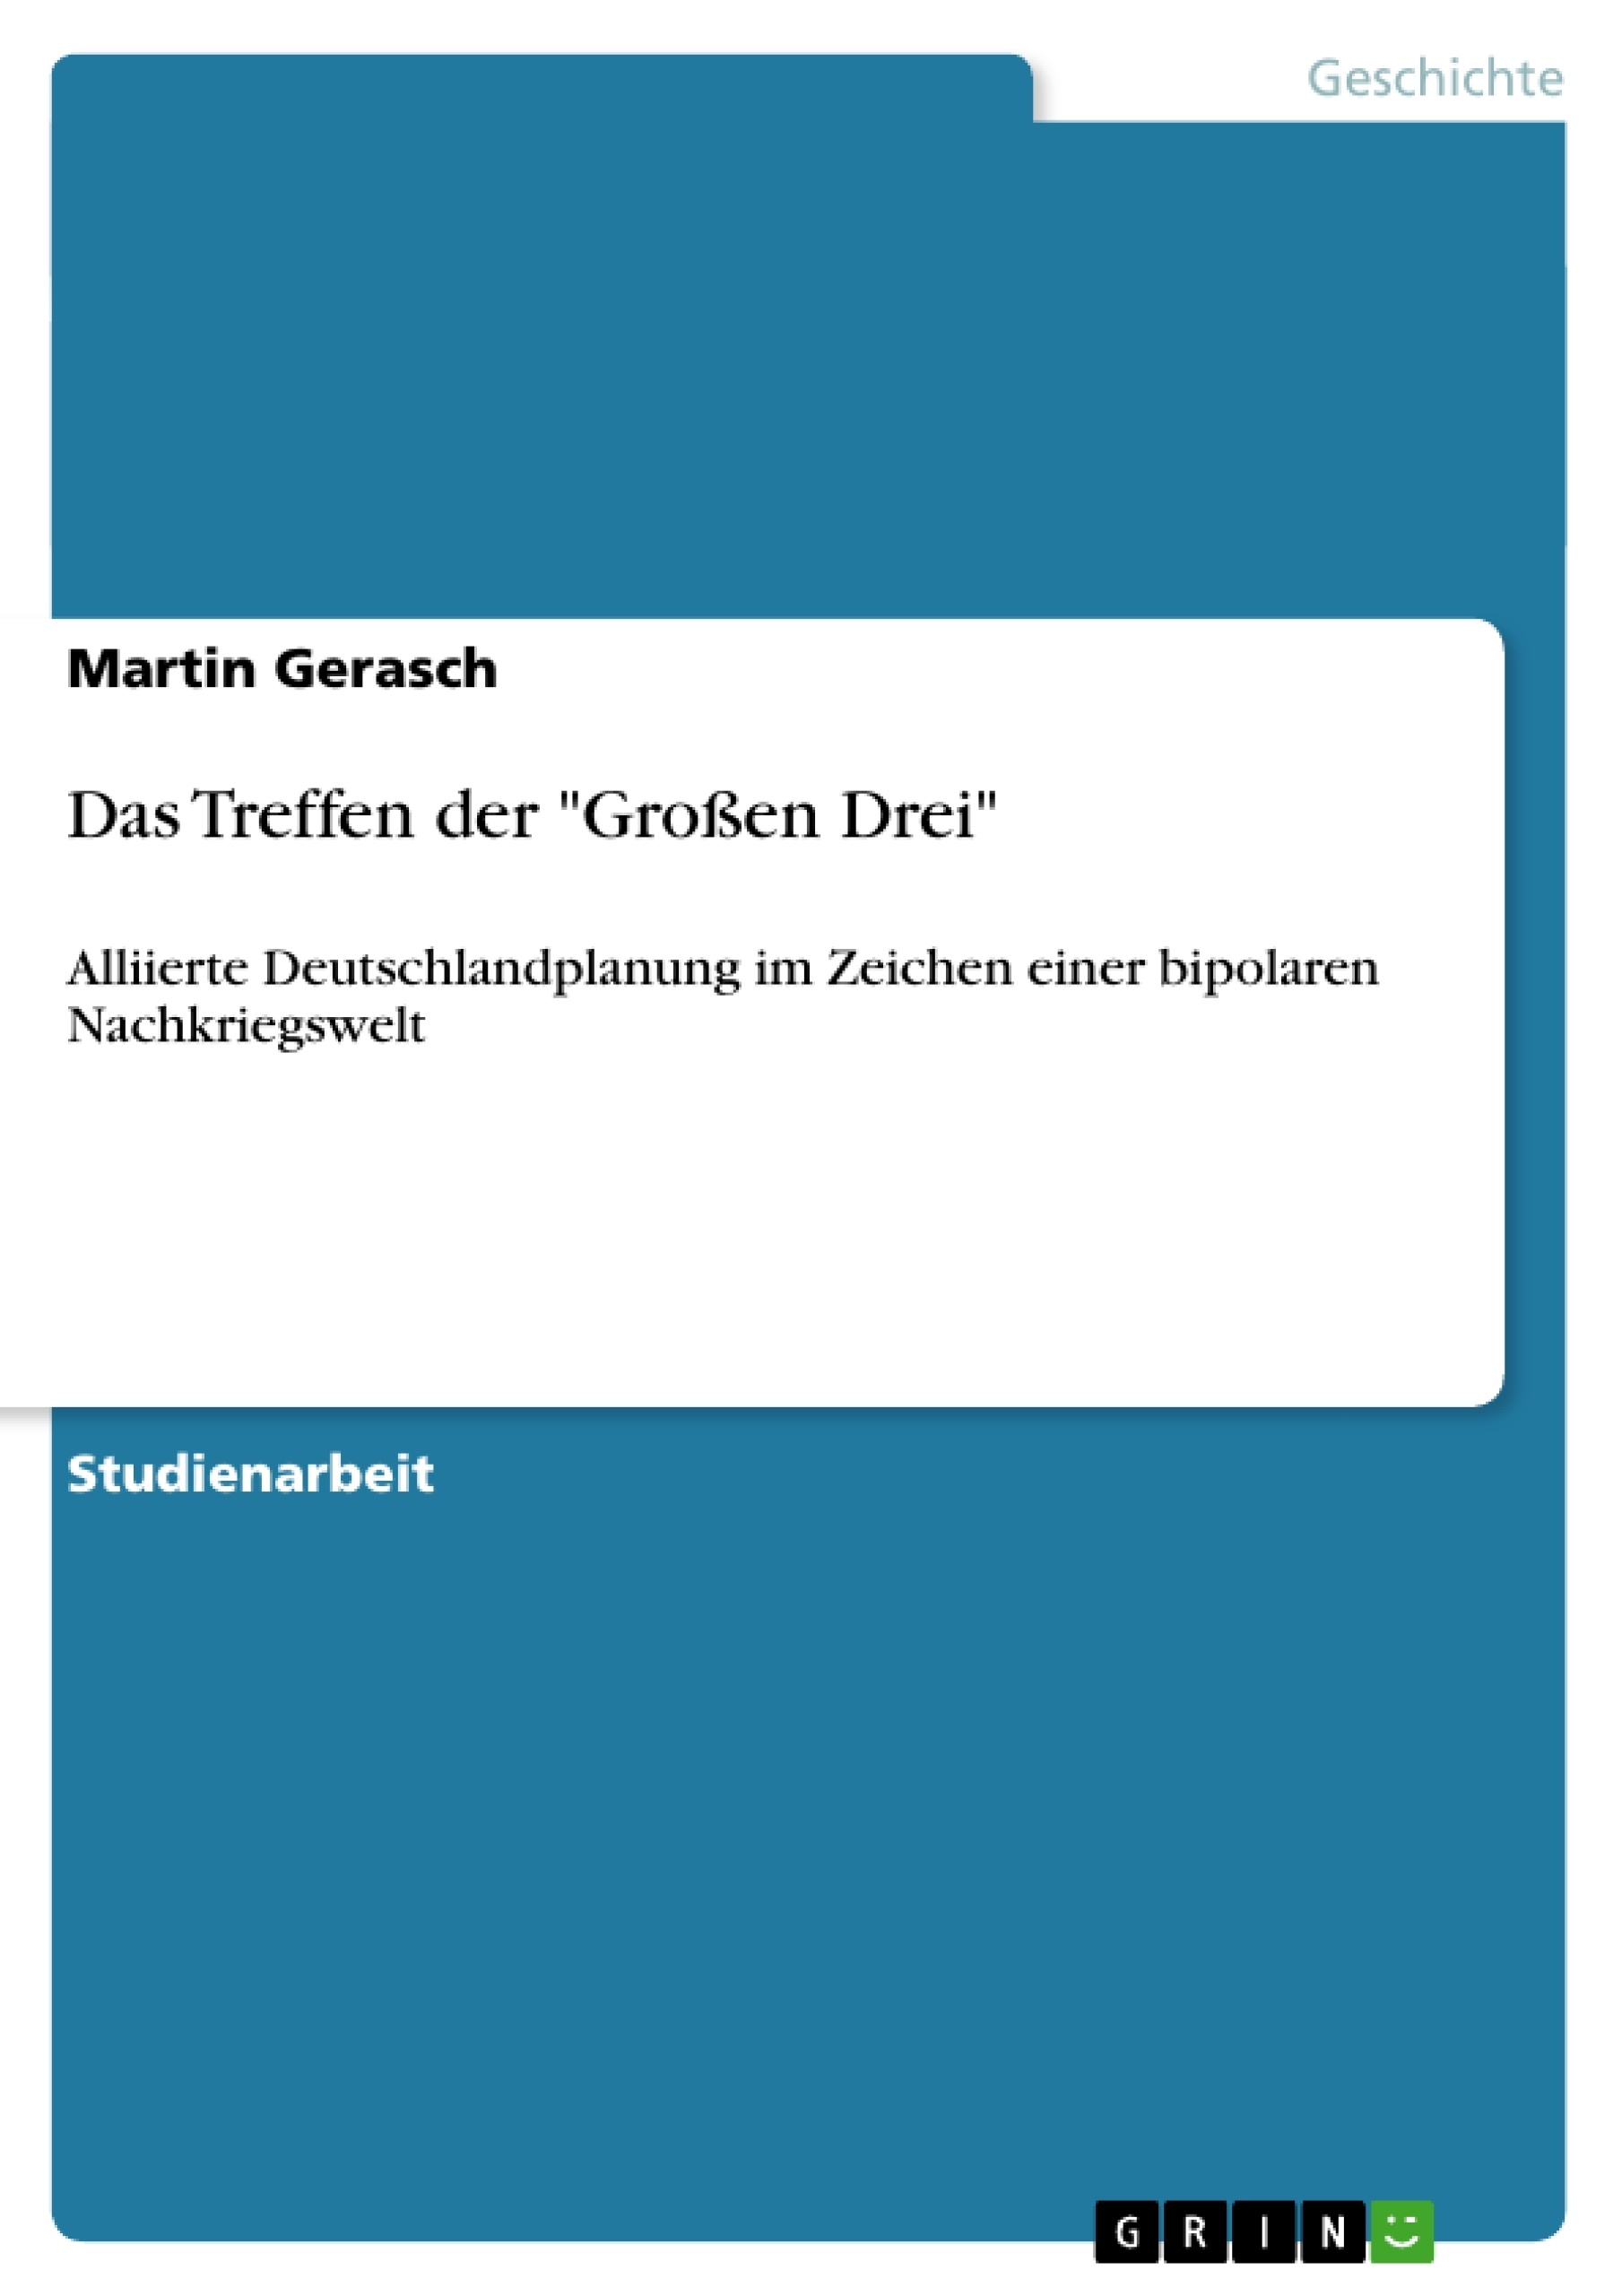 Title: Das Treffen der "Großen Drei"